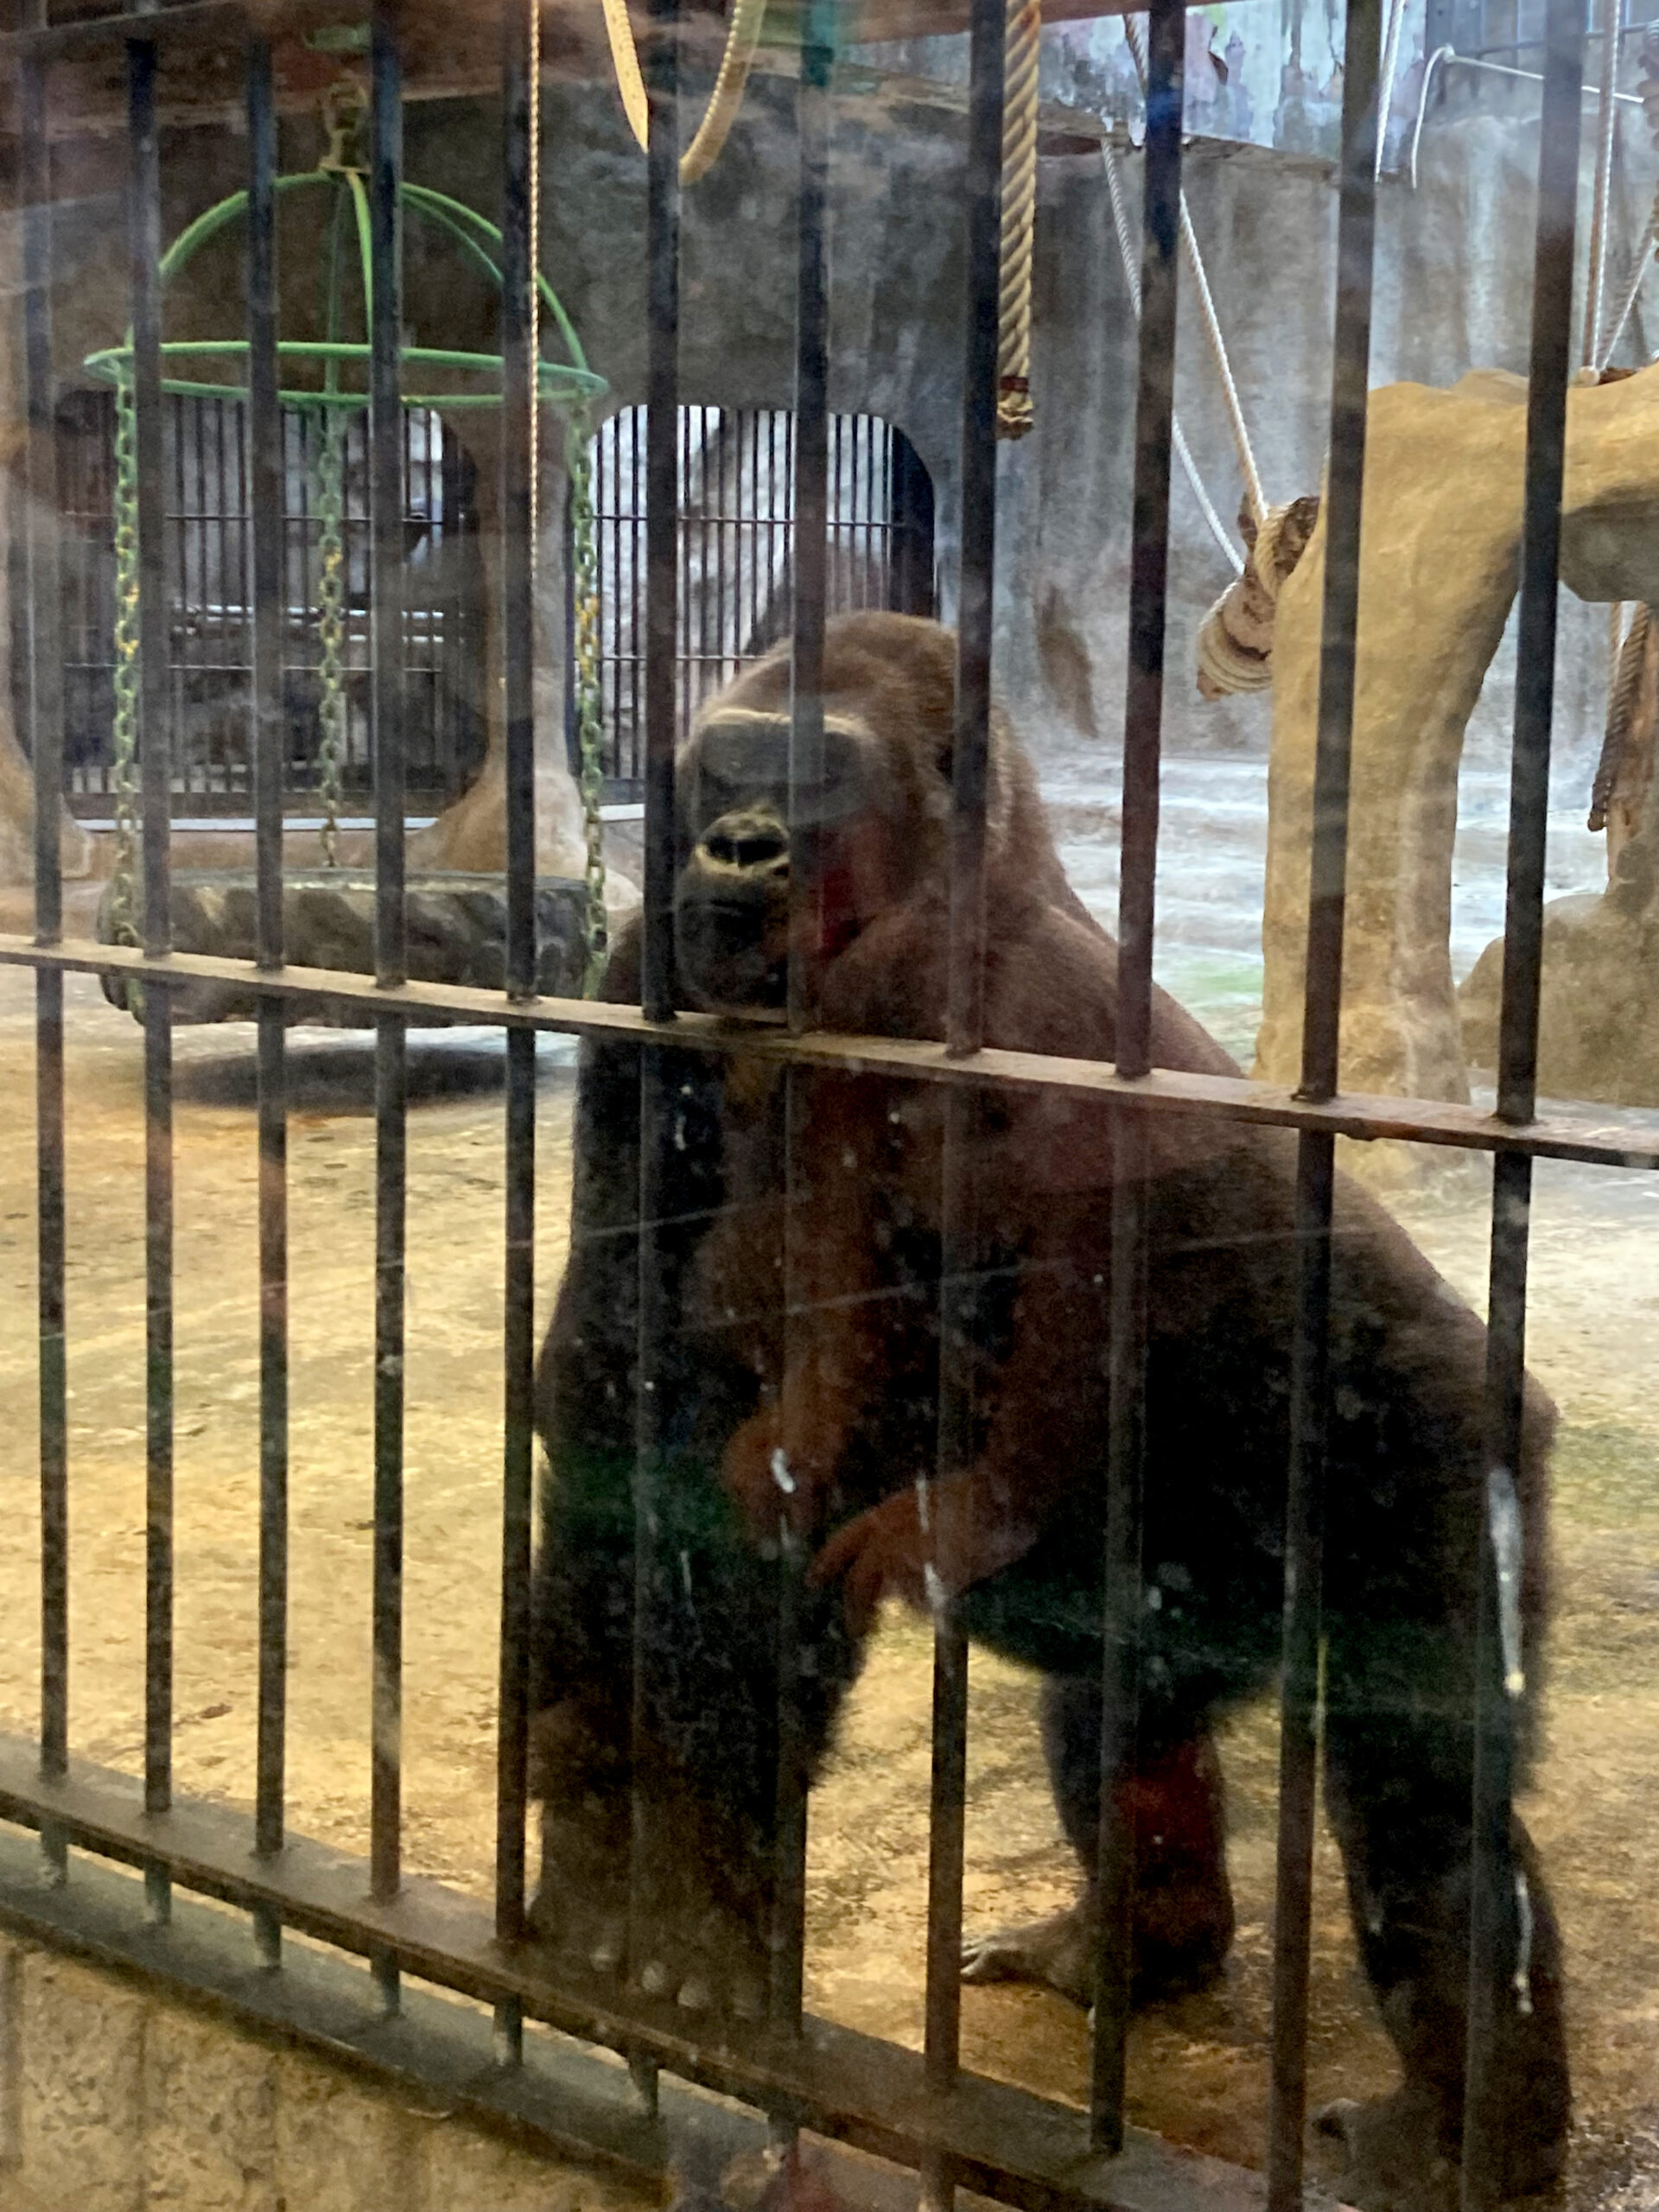 Gorilla hinter Gittern